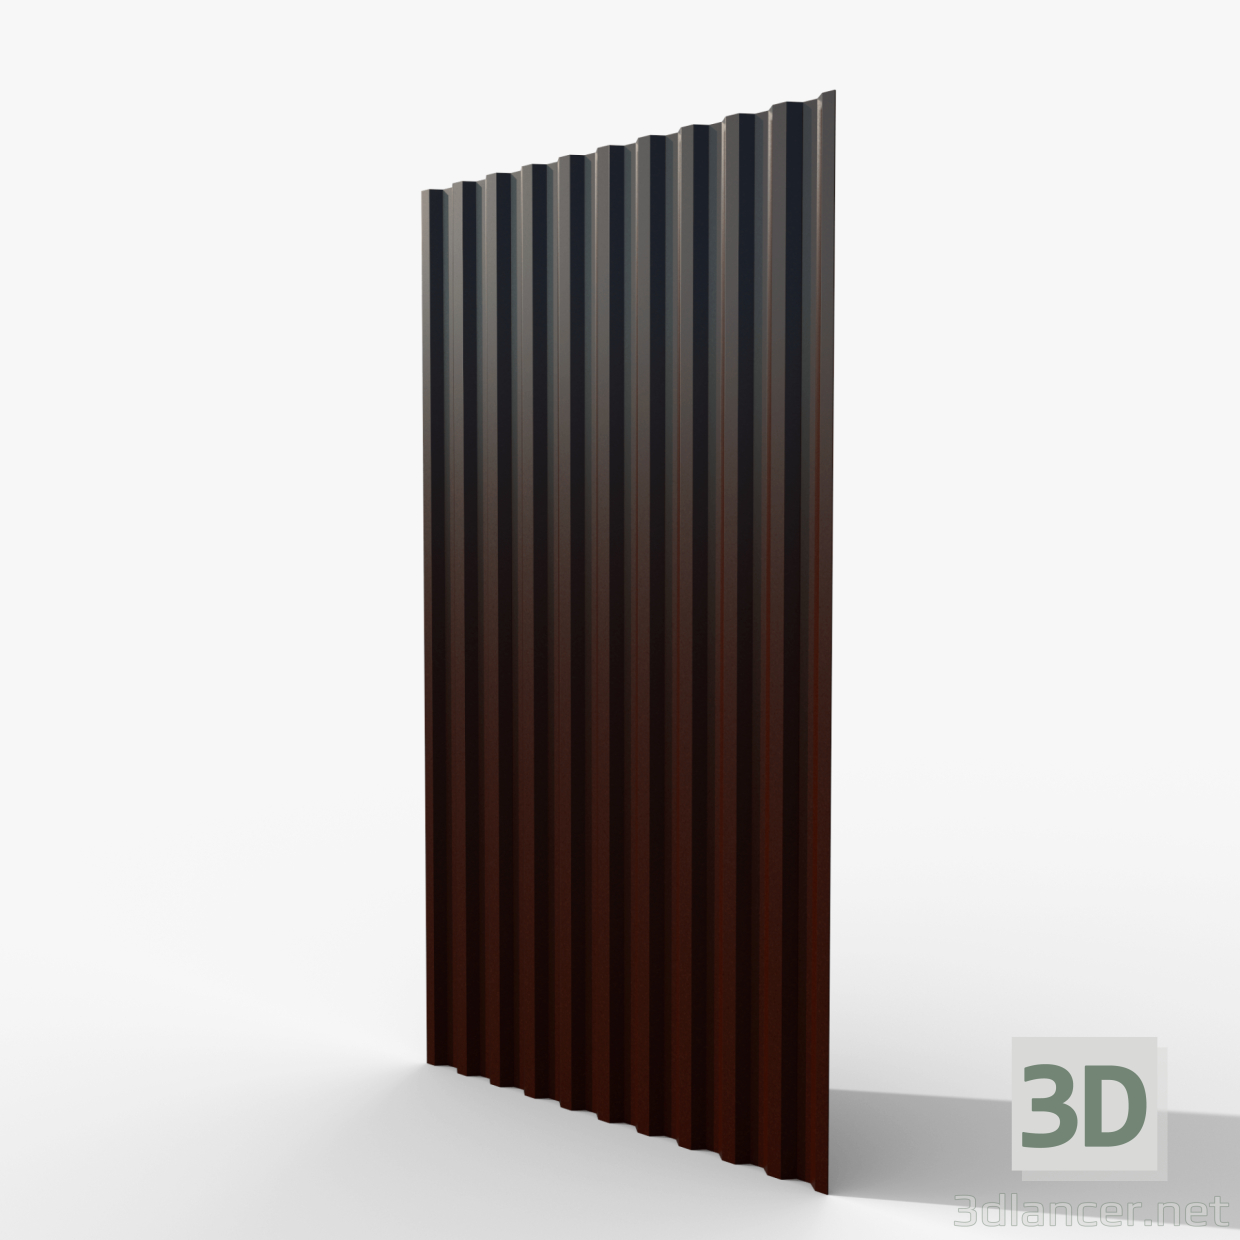 Chapa perfilada marrón 3D modelo Compro - render